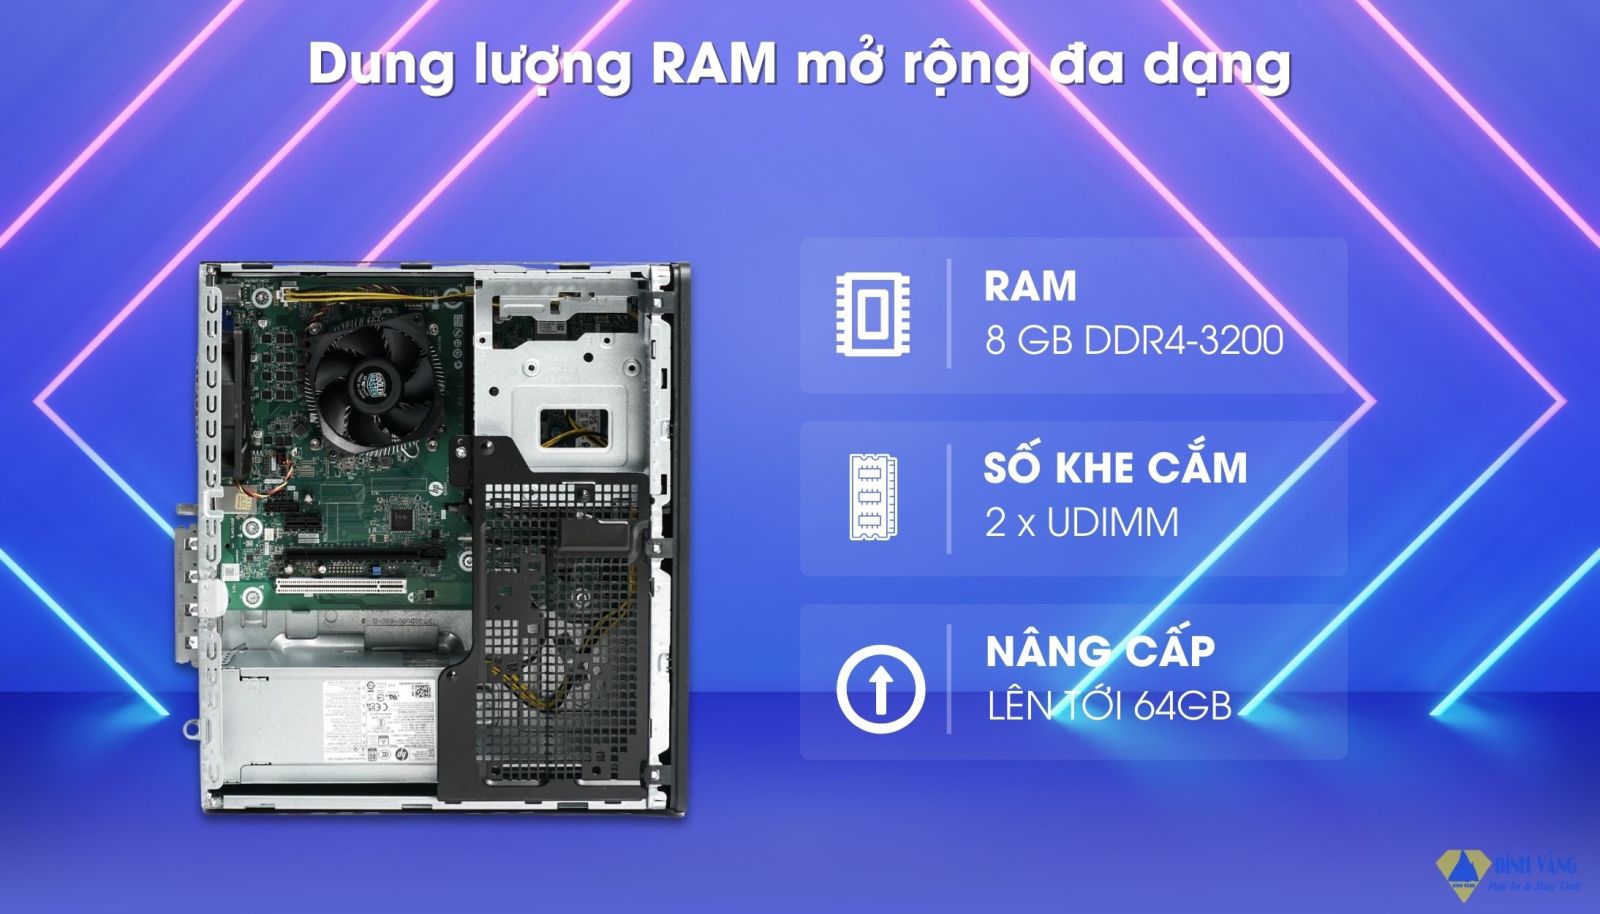 Tối đa hóa hiệu suất với dung lượng RAM lớn